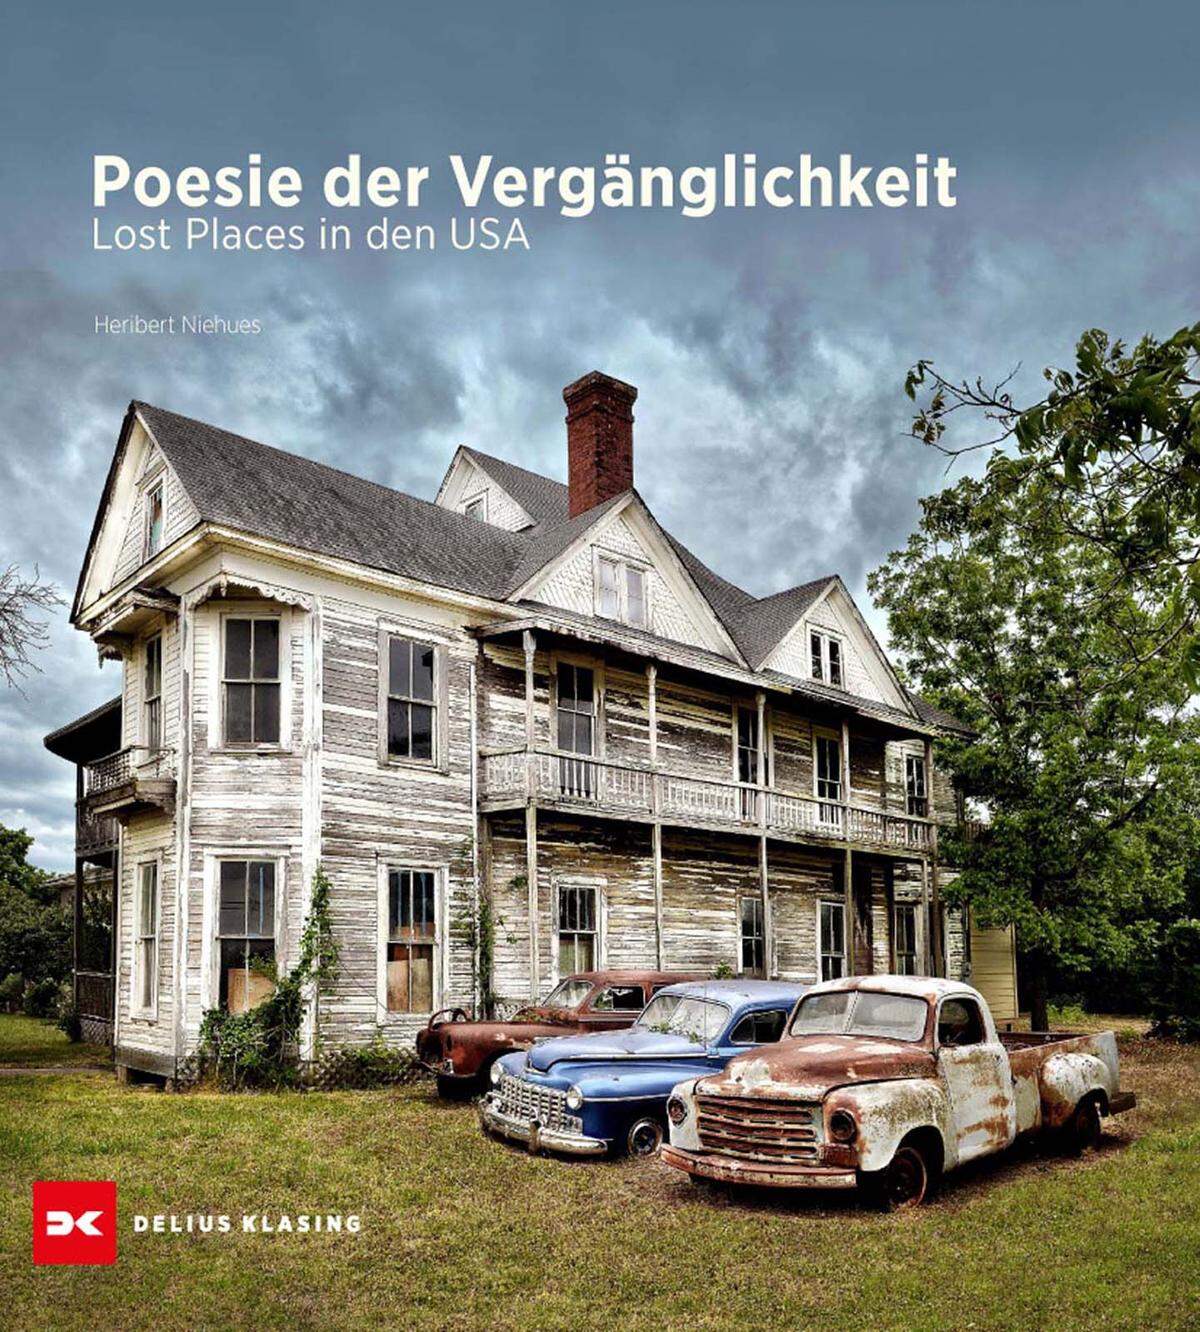 Heribert Niehues Poesie der Vergänglichkeit, Lost Places in den USA Erschienen im Verlag Delius Klasing,  49,90 Euro. Mehr dazu. 